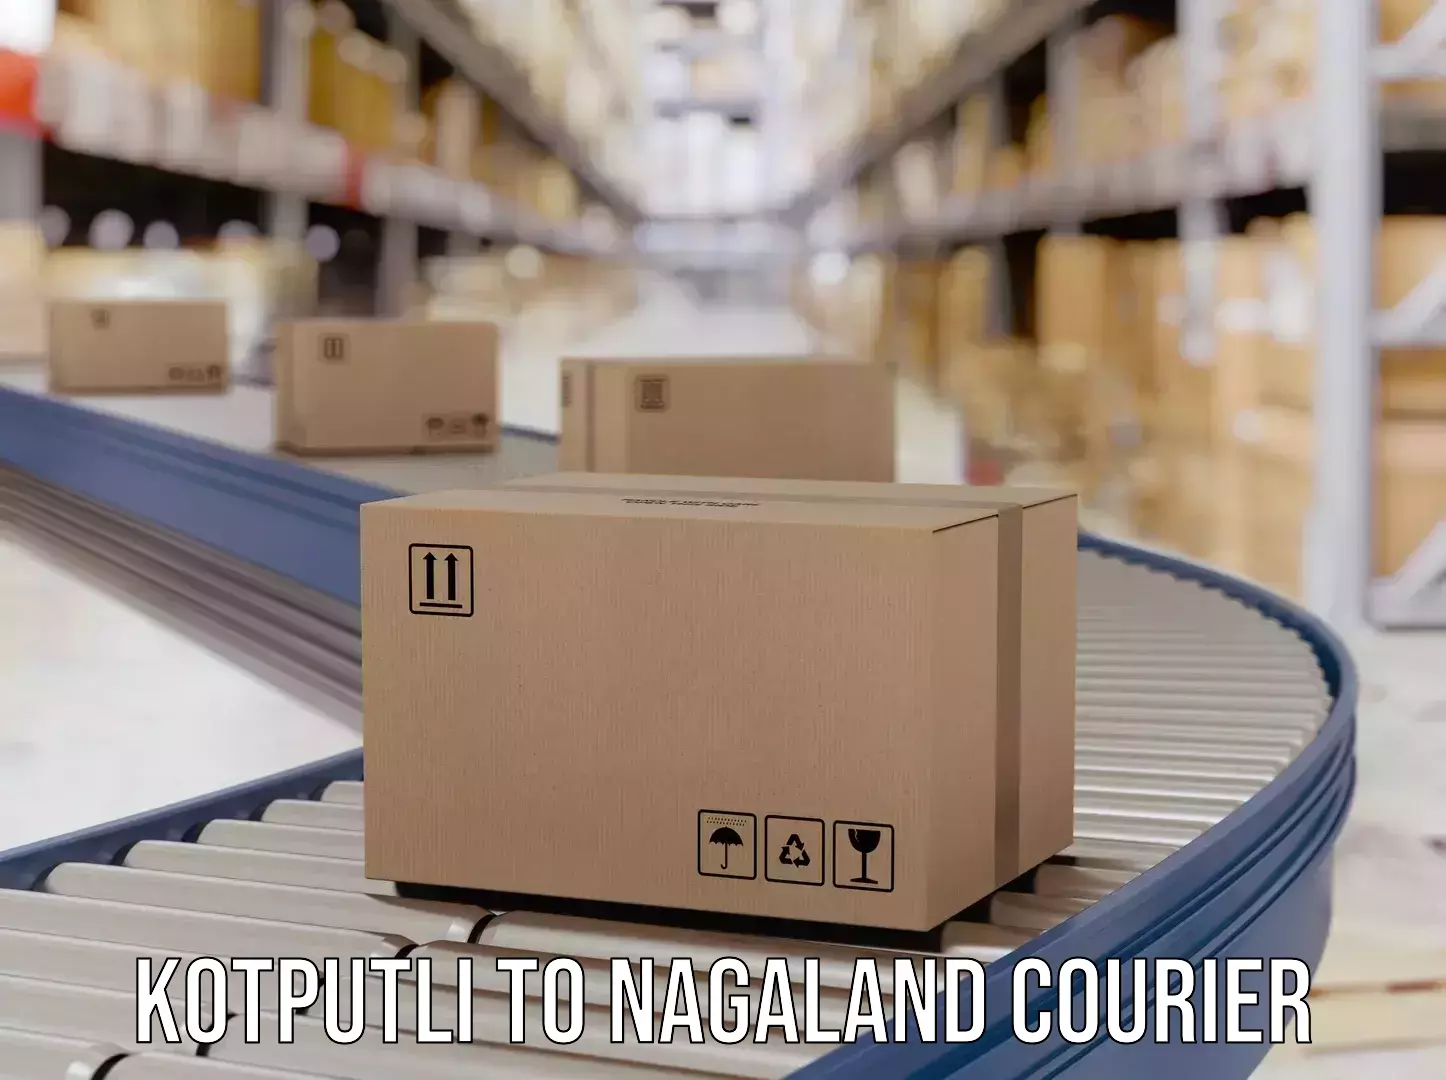 On-demand shipping options Kotputli to Nagaland